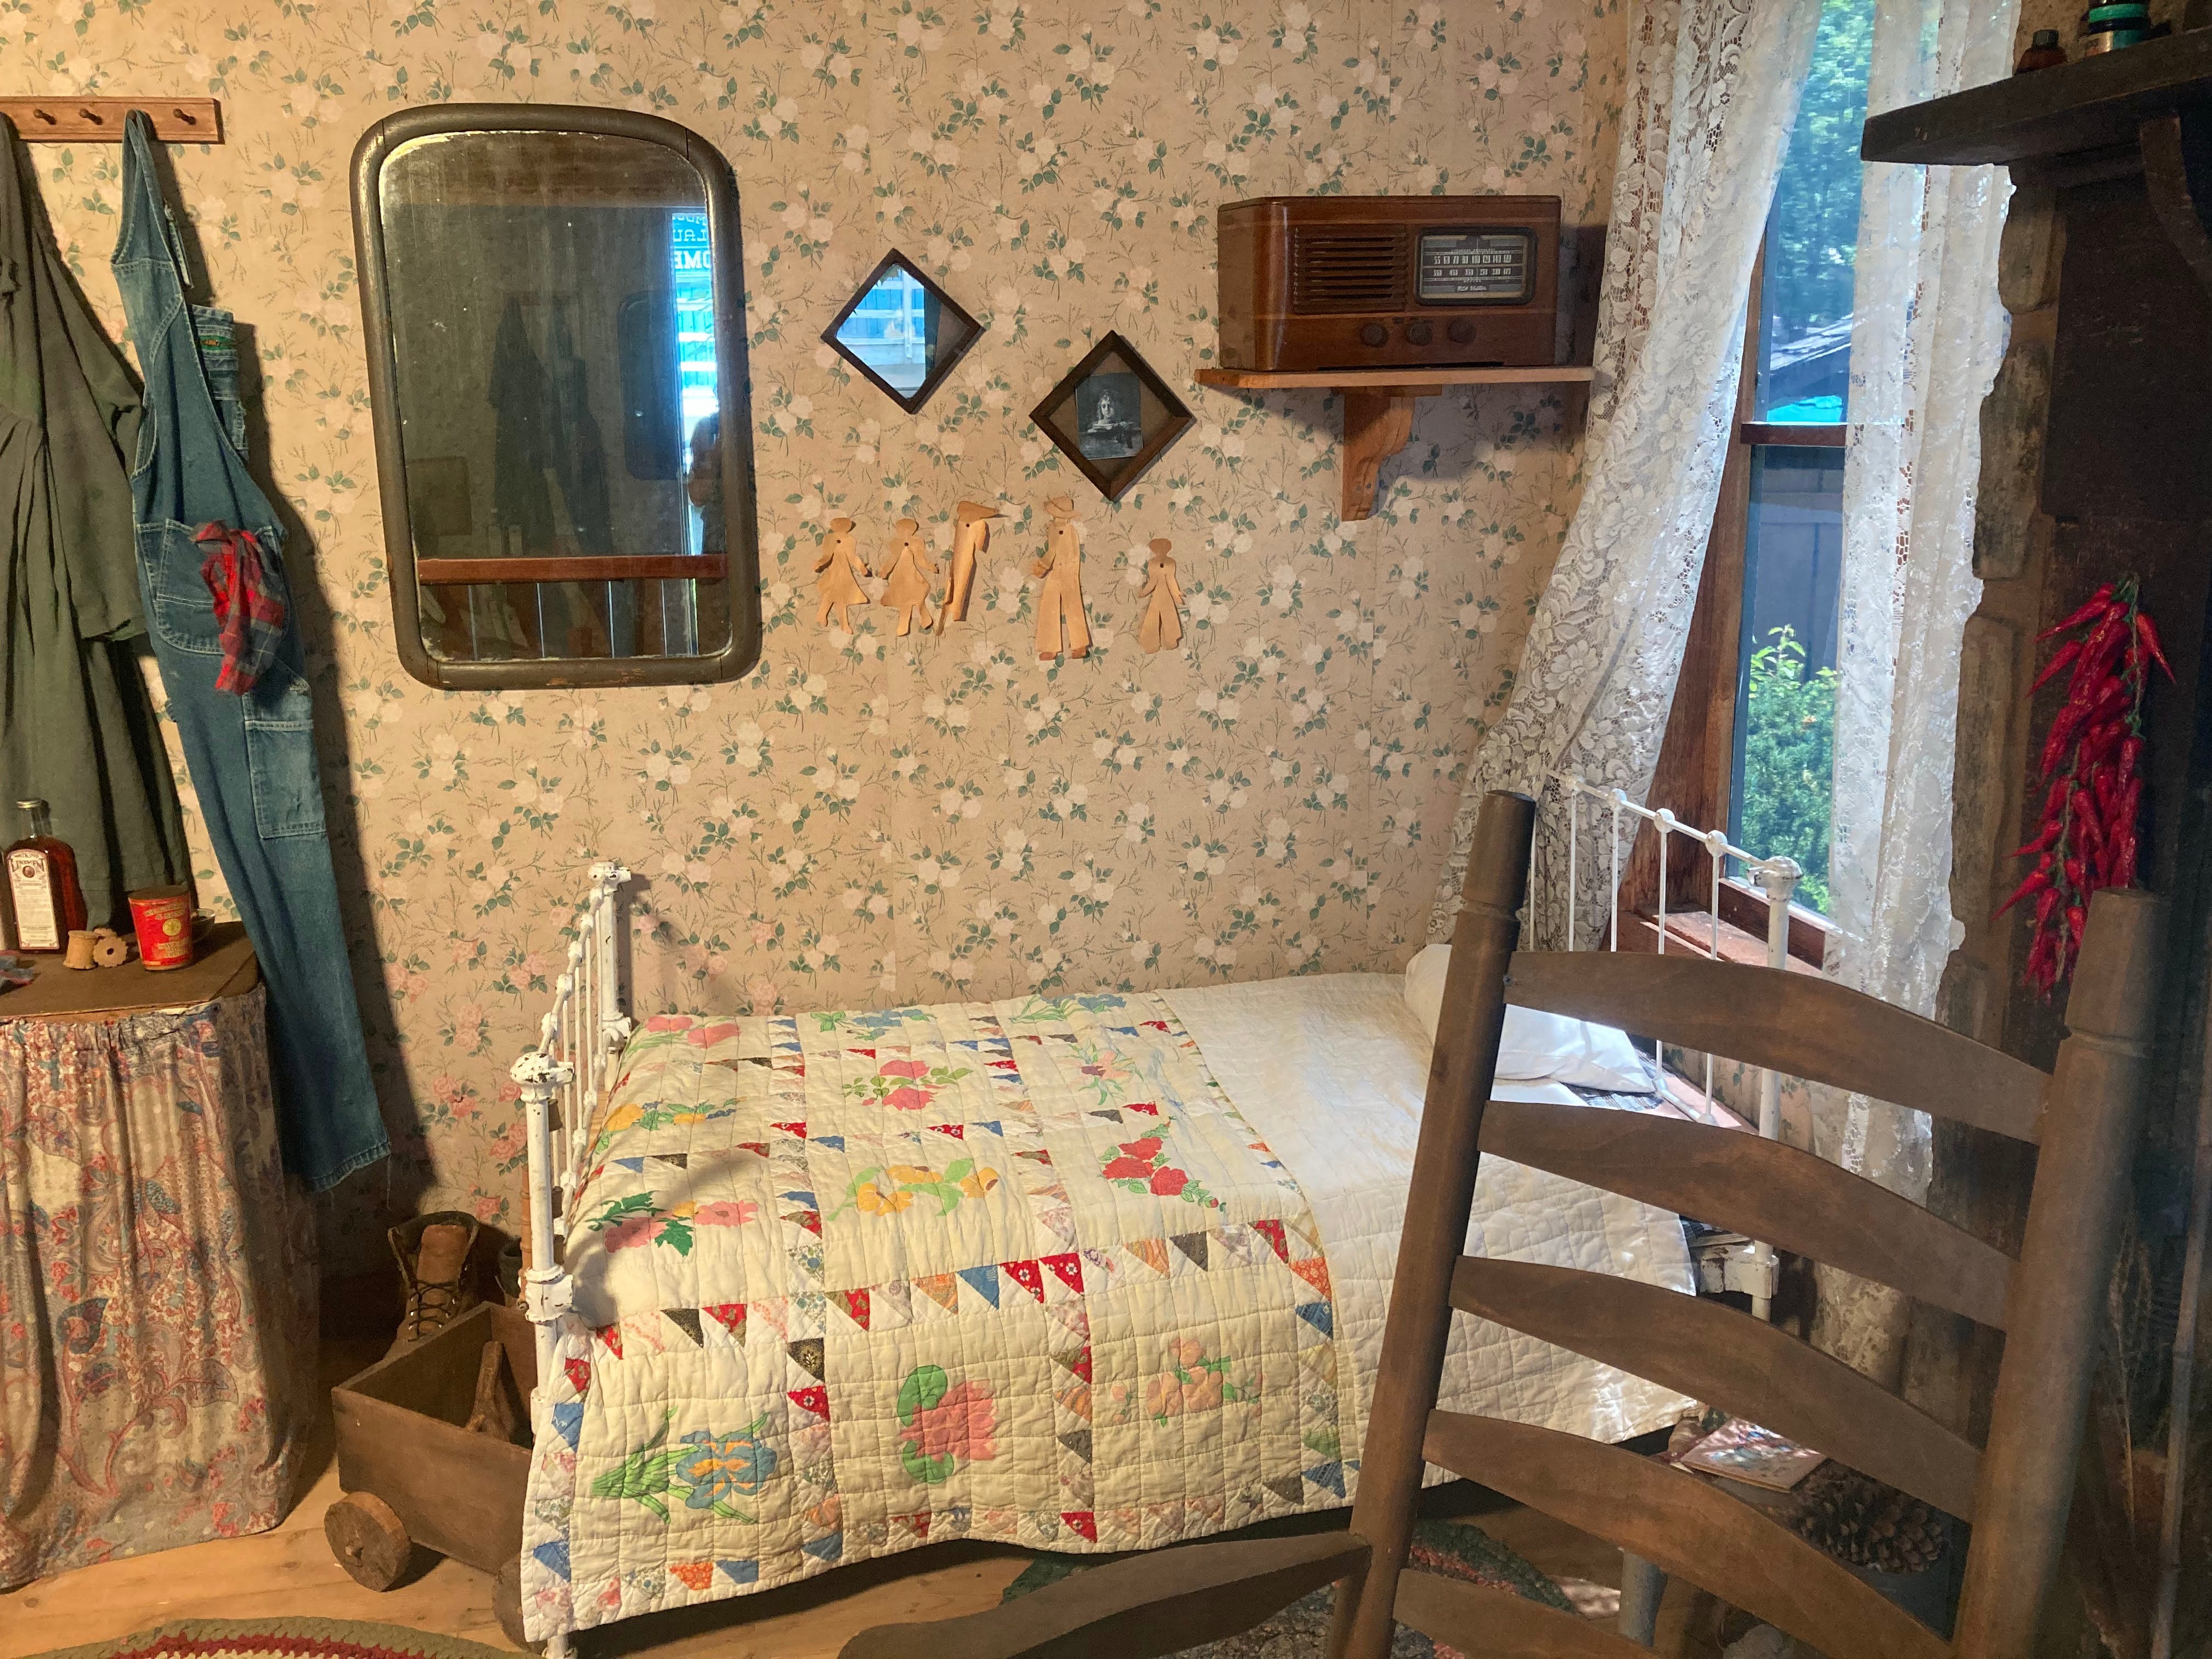 Ein Schlafzimmer in einer Nachbildung von Dolly Partons Elternhaus in Dollywood.